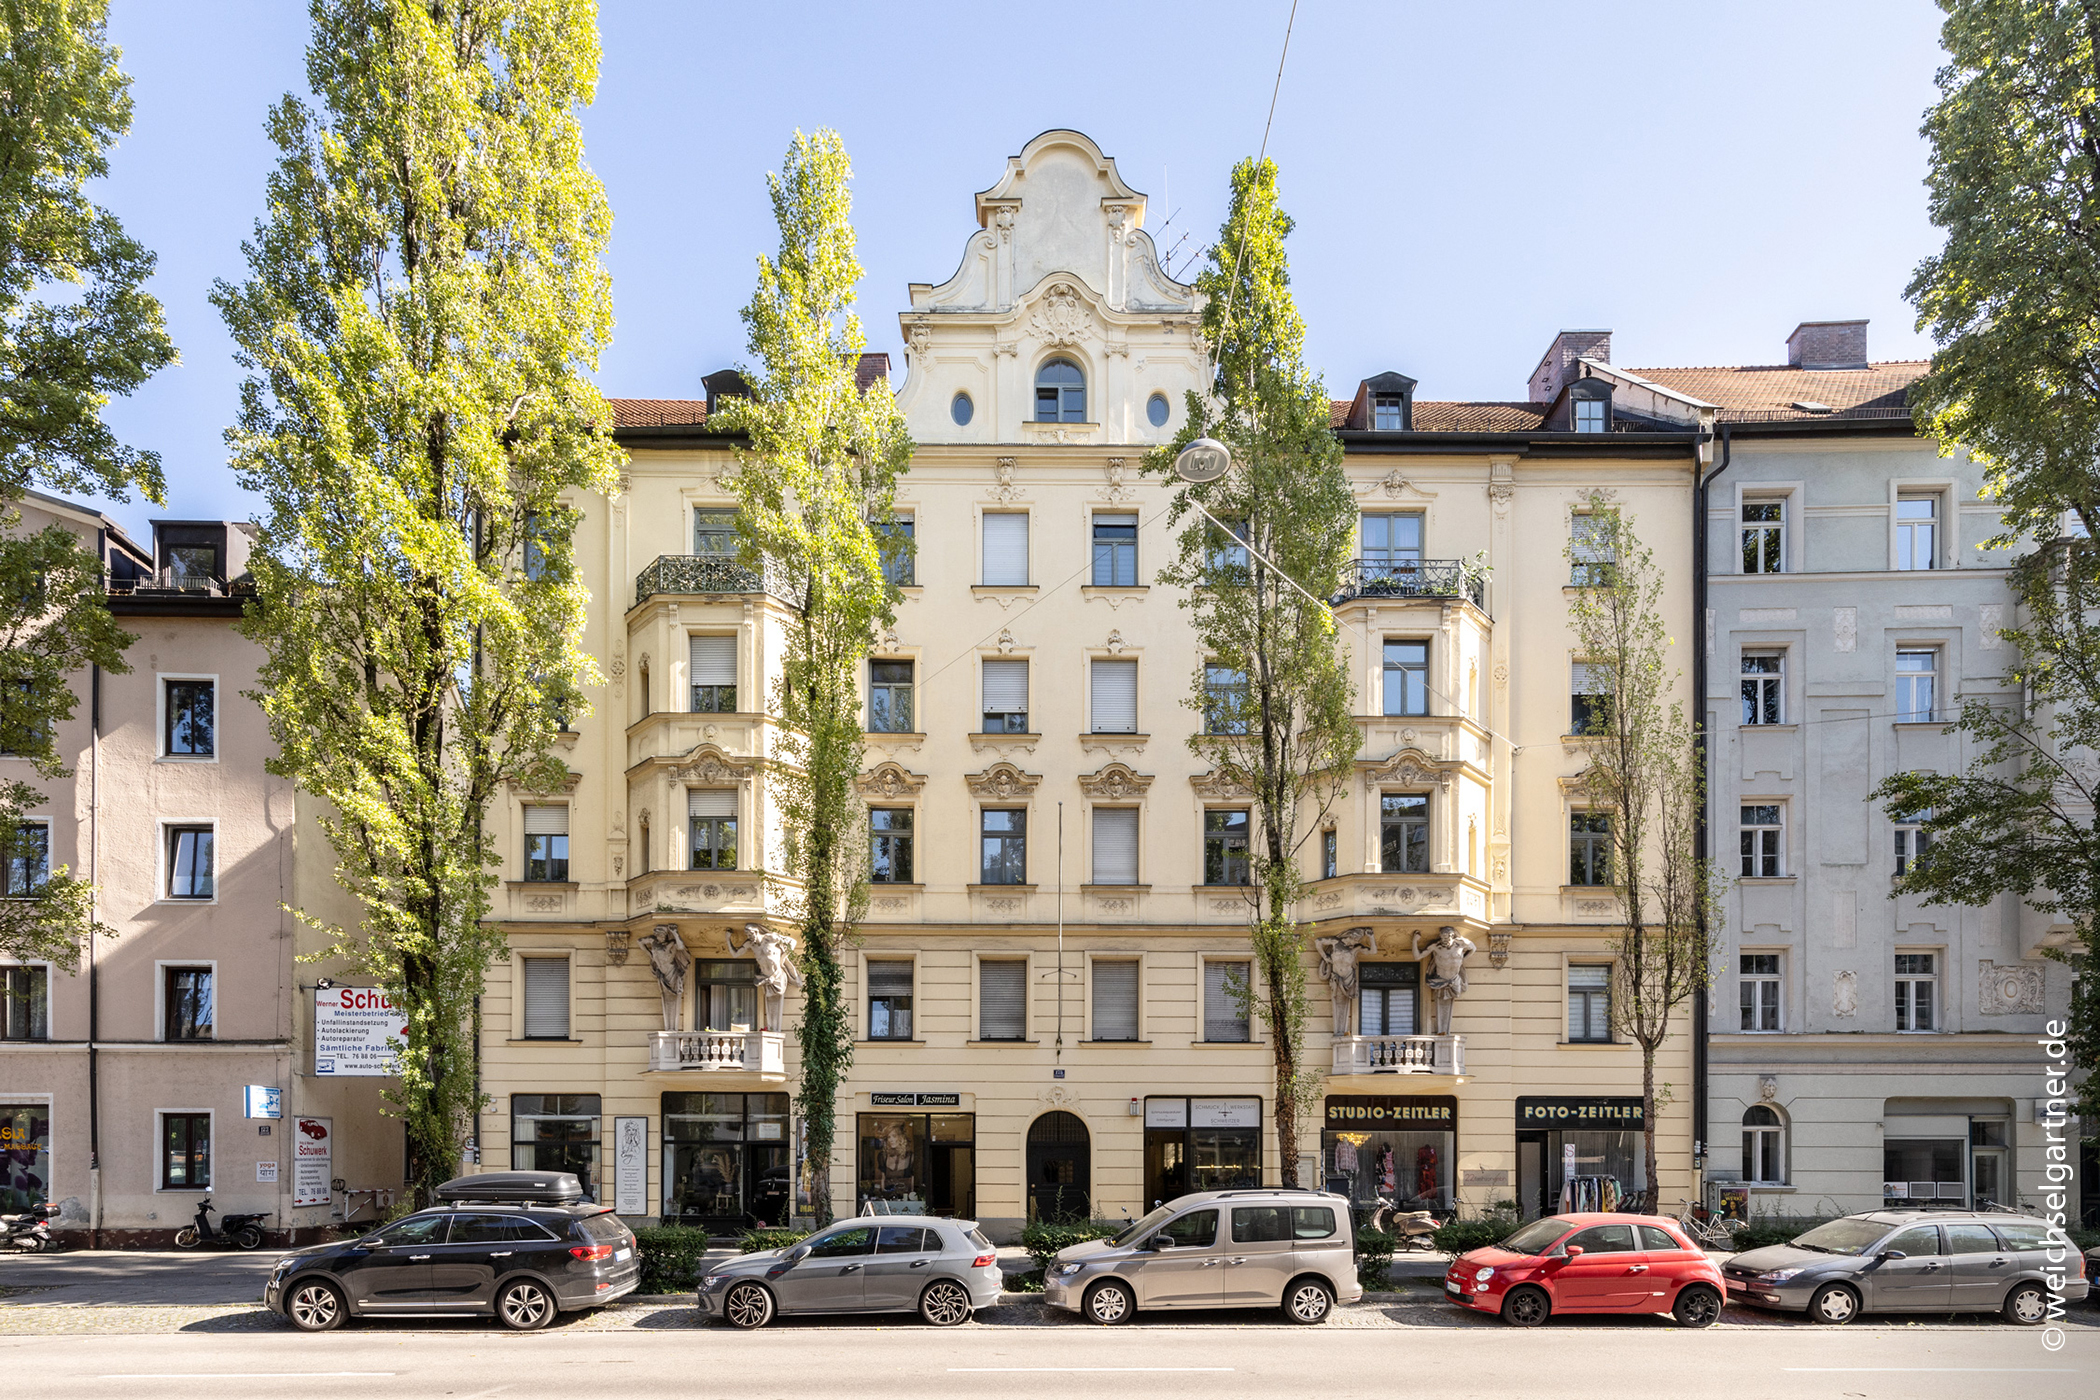 Rarität von 1904: Denkmalgeschütztes Wohn- und Geschäftshaus mit 19 Einheiten, 80337 München, Wohn- und Geschäftshaus